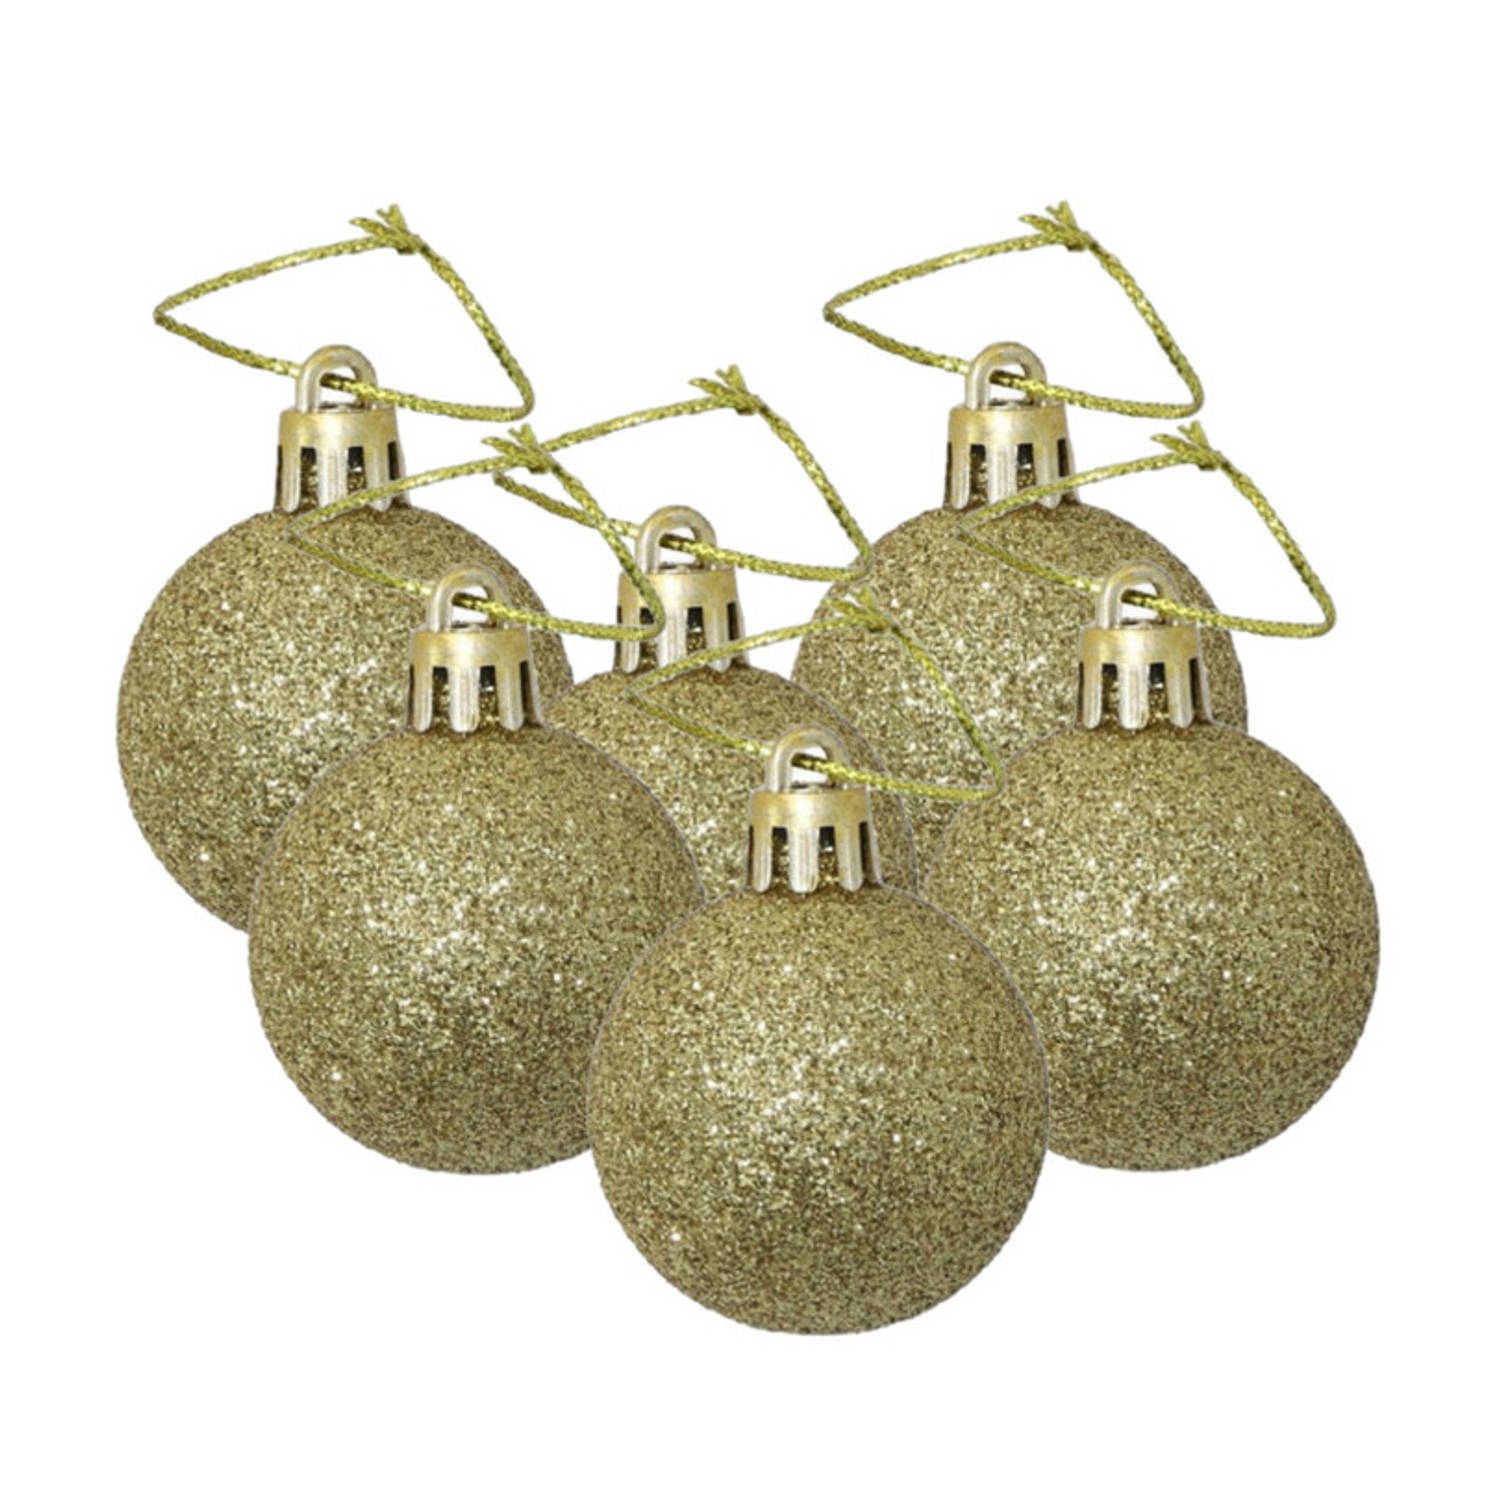 6x stuks kerstballen goud glitters kunststof 4 cm - Kerstbal